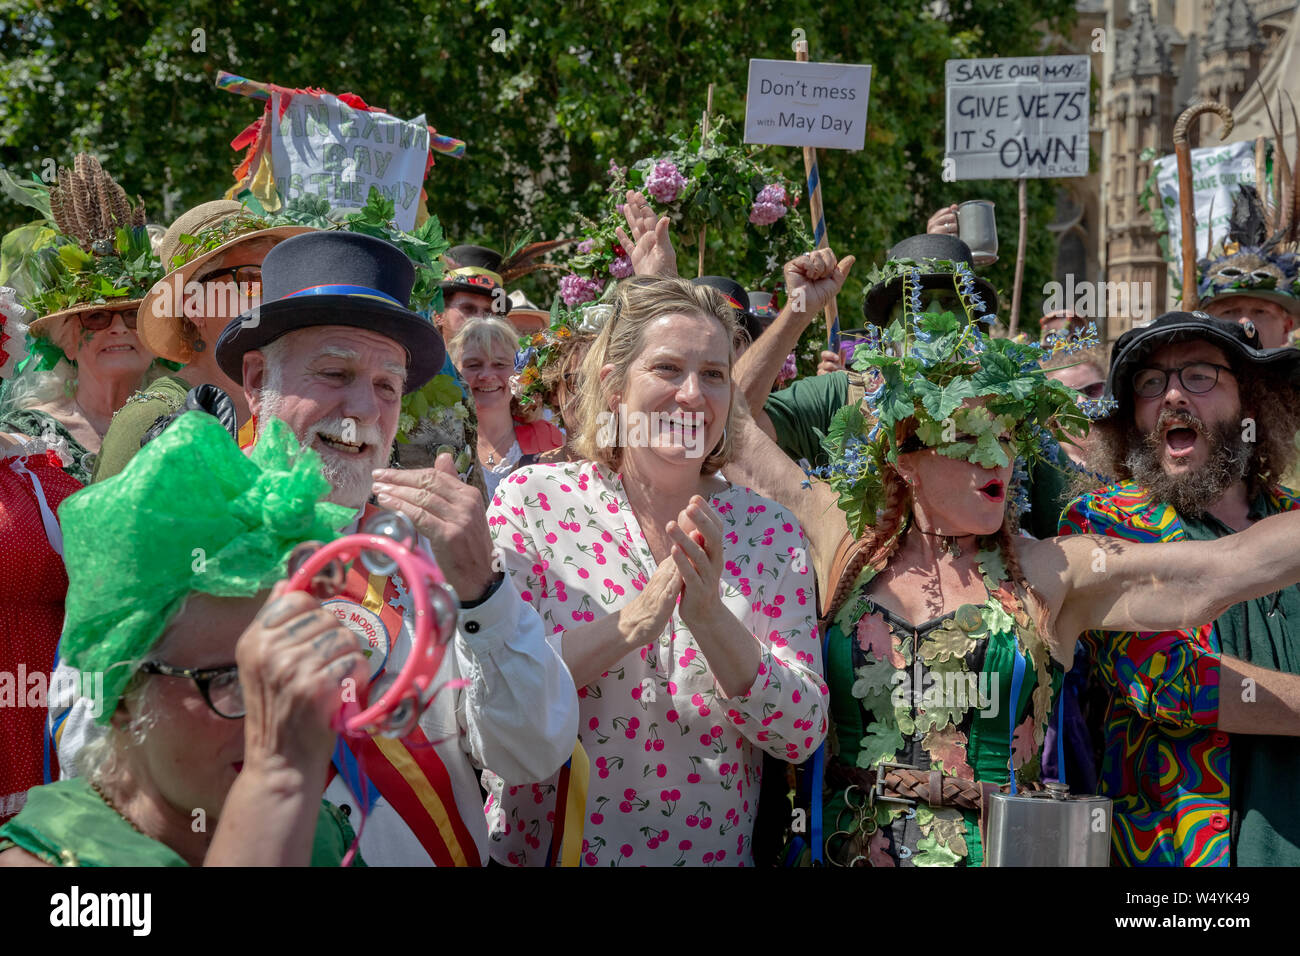 L'Amber Rudd MP de Hastings rejoint et illustre appui à la Morris de protestation devant le Parlement à Westminster, London, UK Banque D'Images